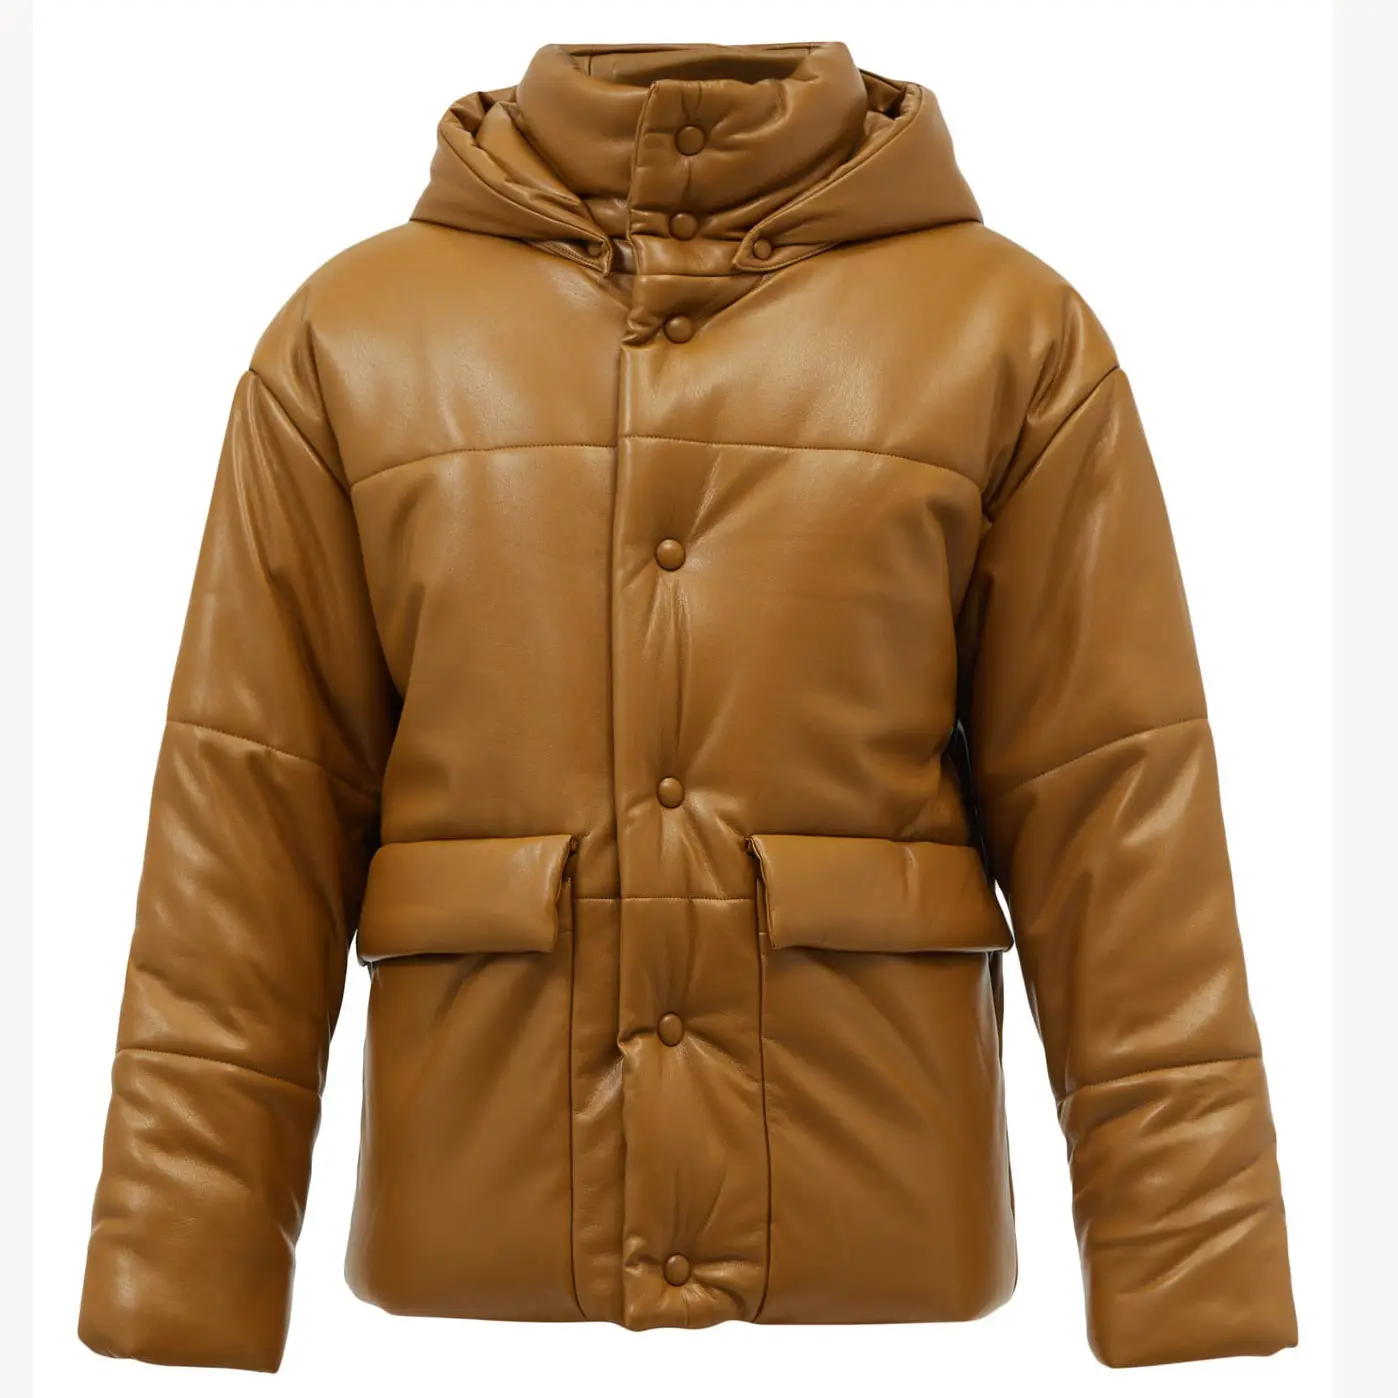 Erkekler için DiZNEW yeni deri ceket, koyu kahverengi bir adamın ceketi giyen soğuktan korkmayan kıyafetler giyer.